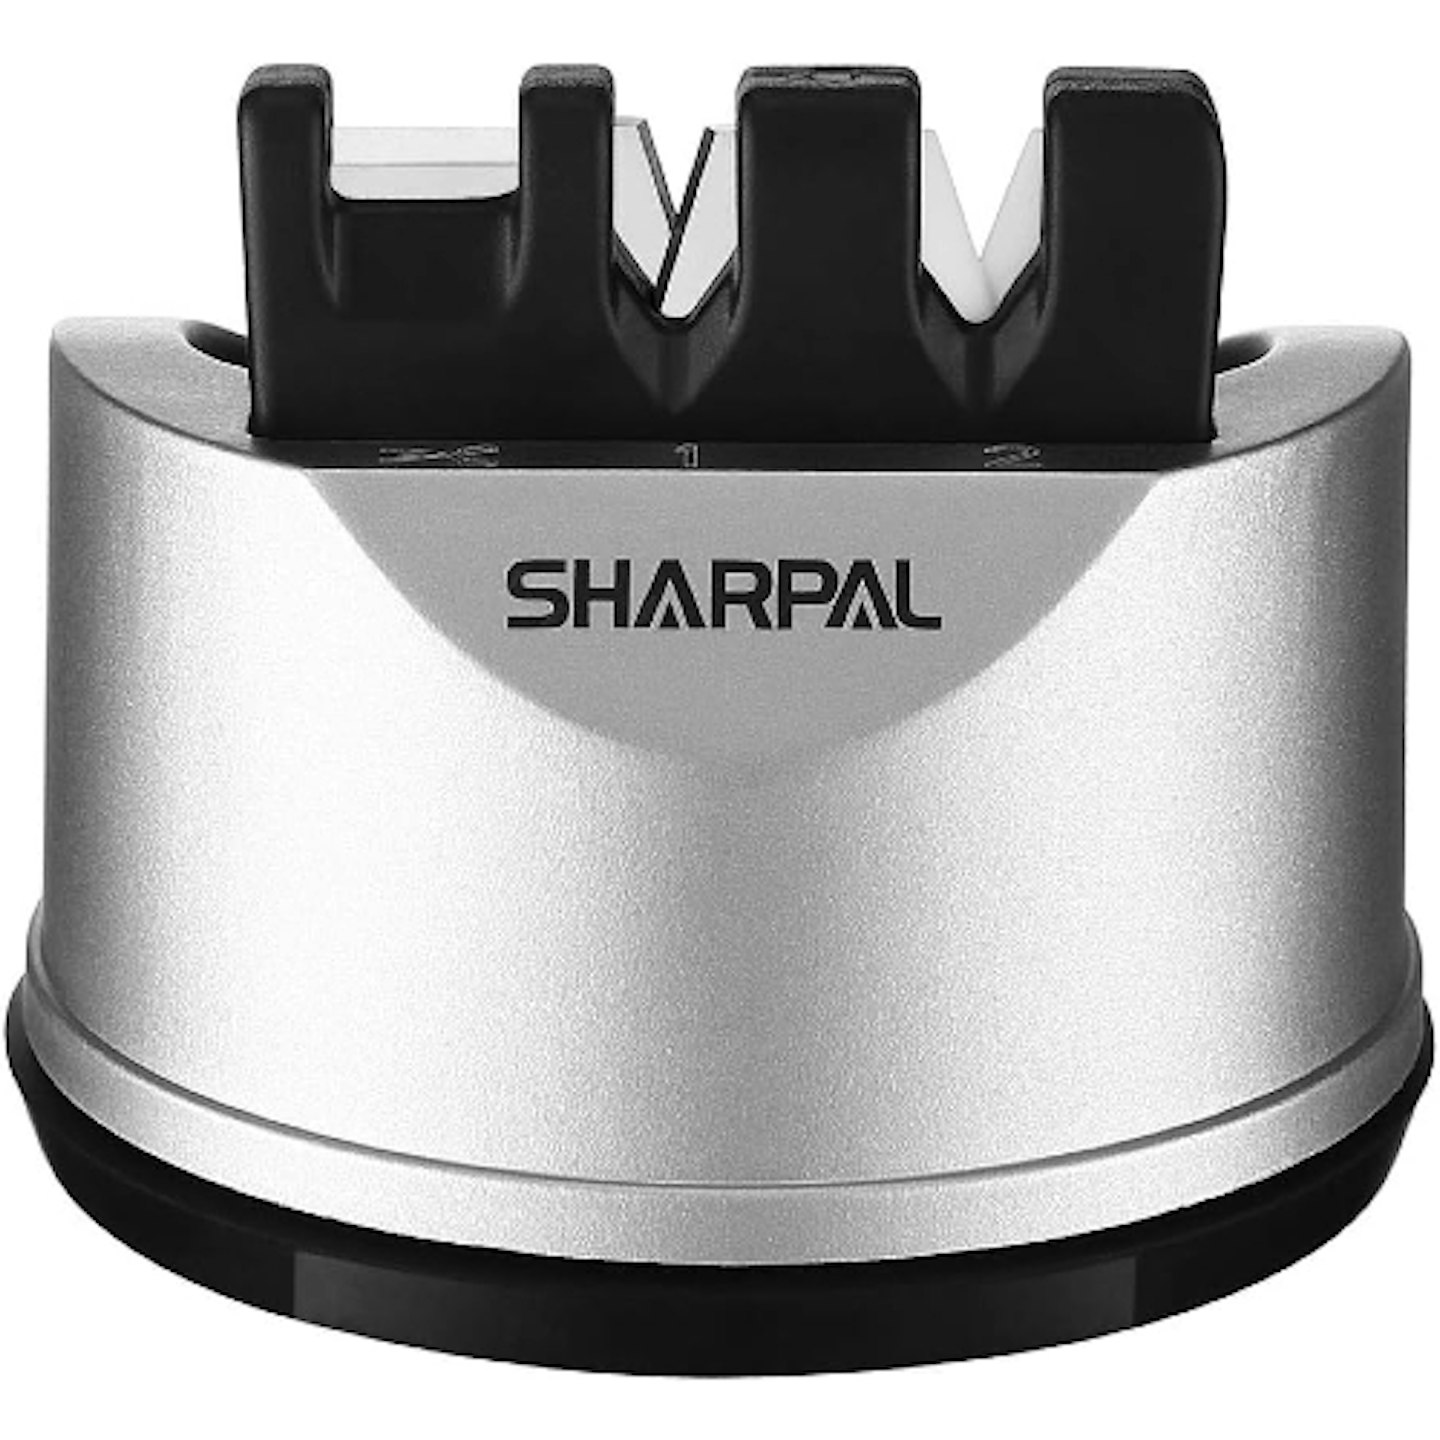 Sharpal sharpener 